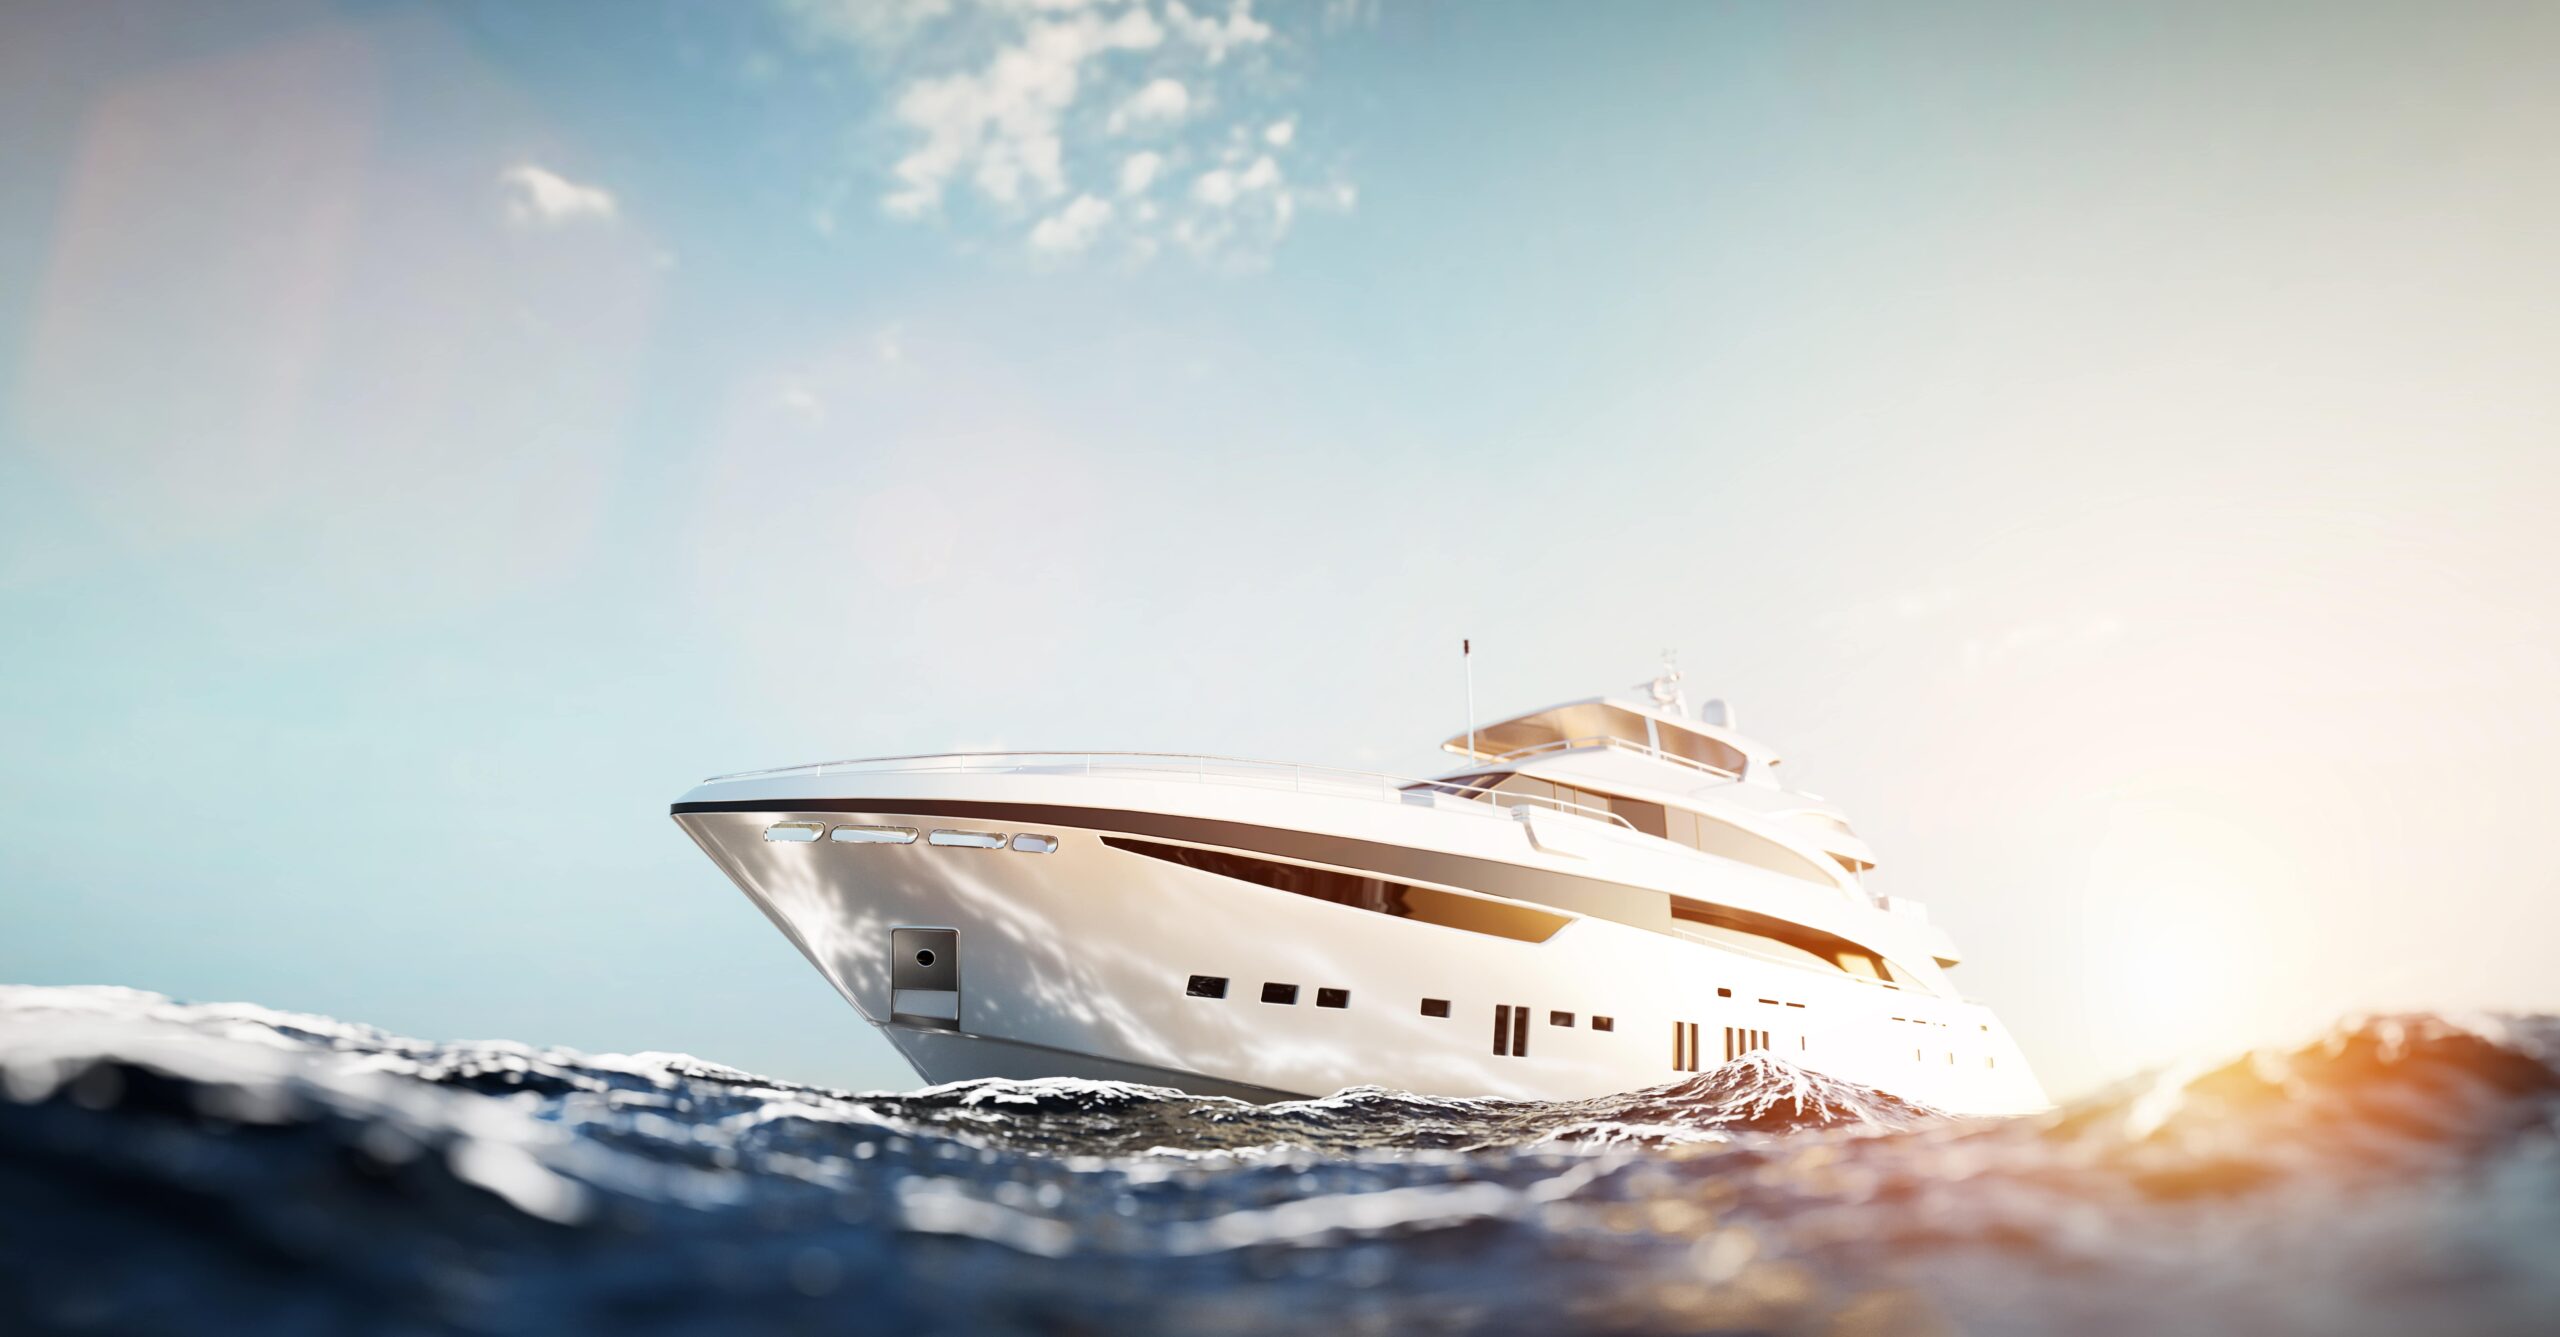 luxury motor yacht on the ocean 2023 11 27 05 28 42 utc min scaled